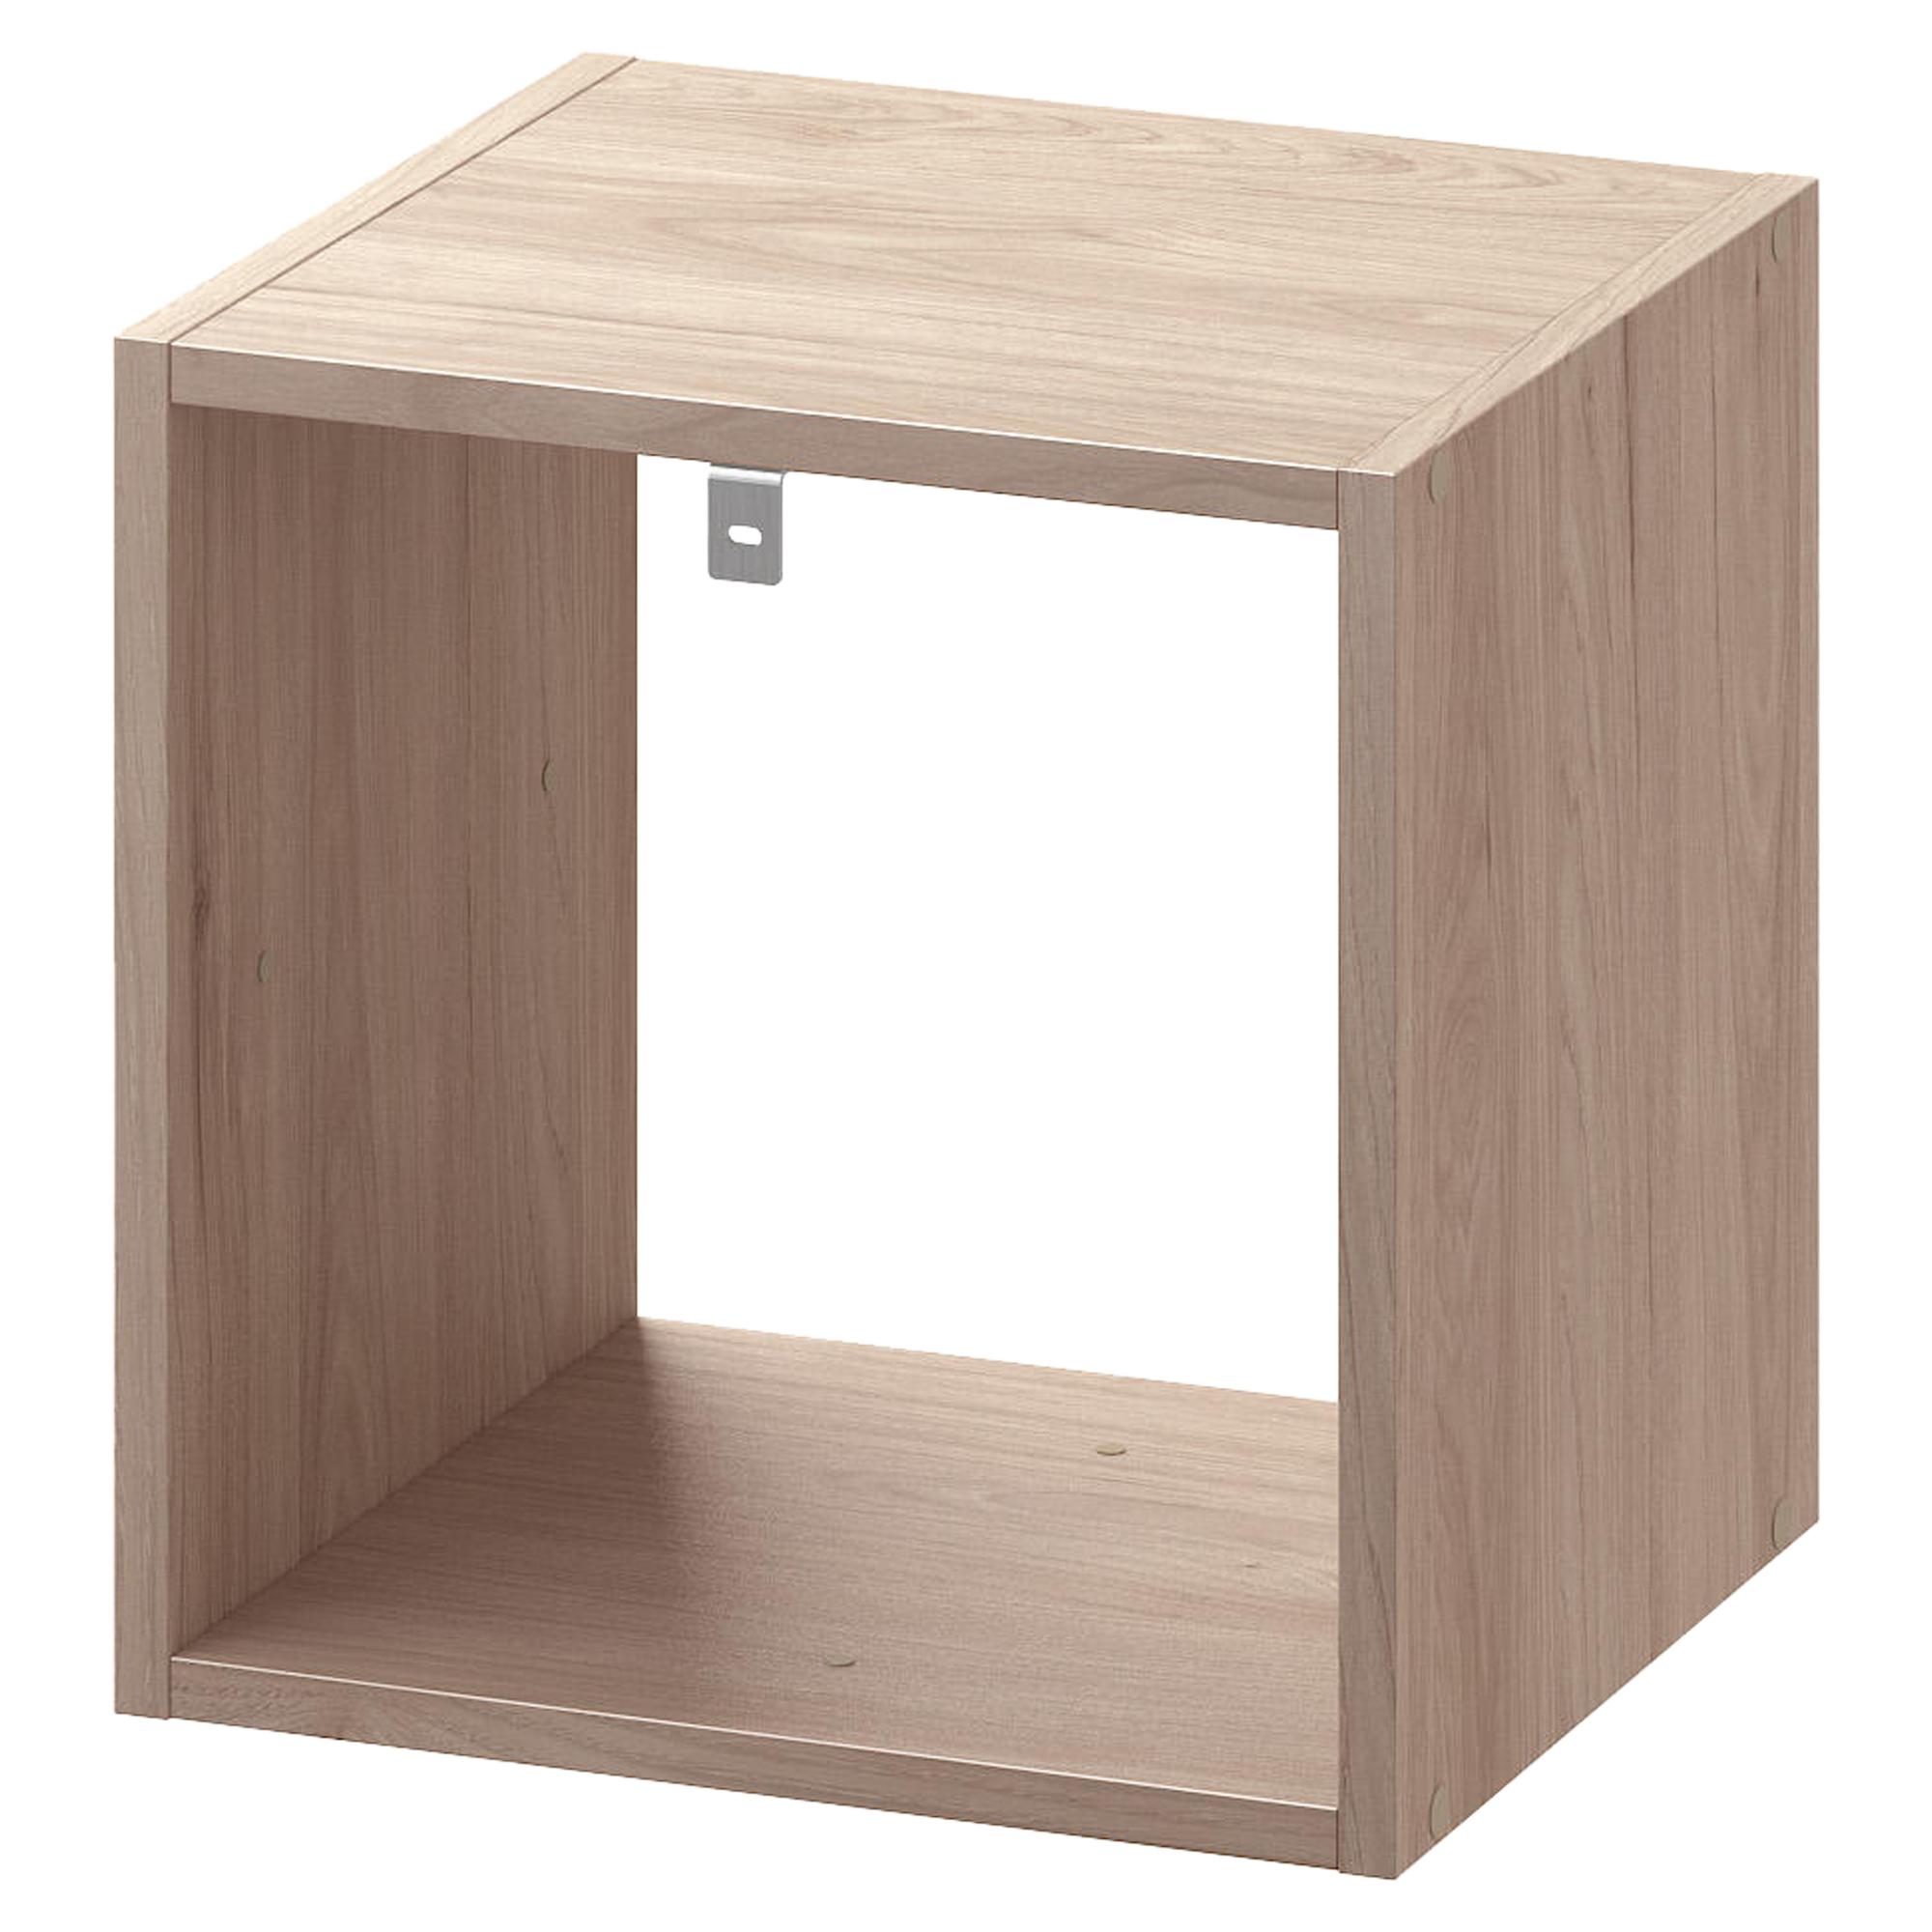 Ideas de muebles de madera con cubos para ganar espacio, Leroy Merlin